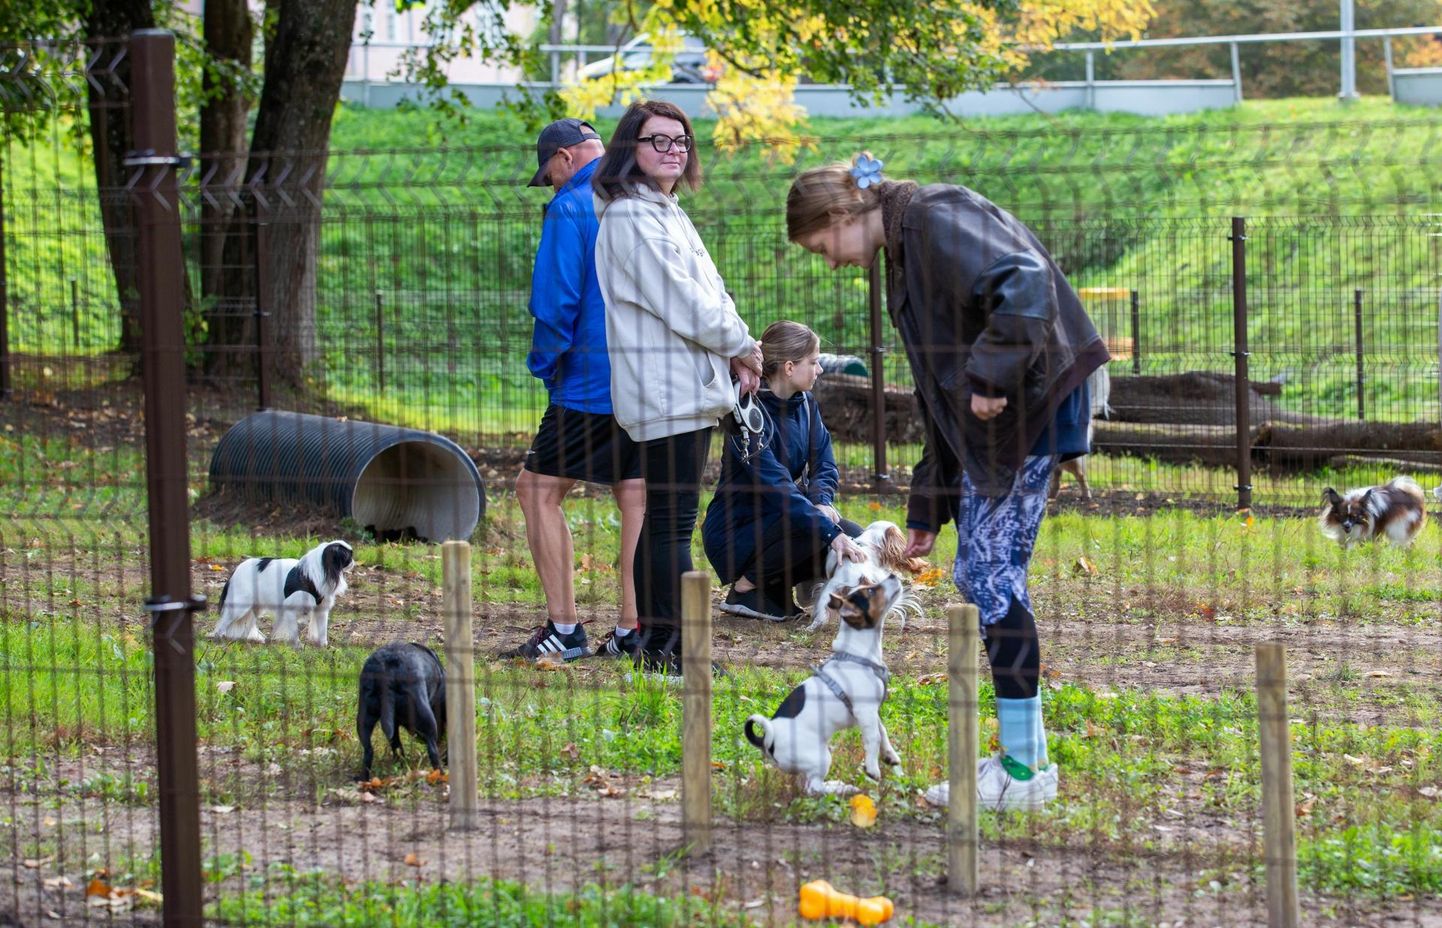 Möödunud aastal võitis linna kaasava eelarve hääletuse idee rajada koertepark. 